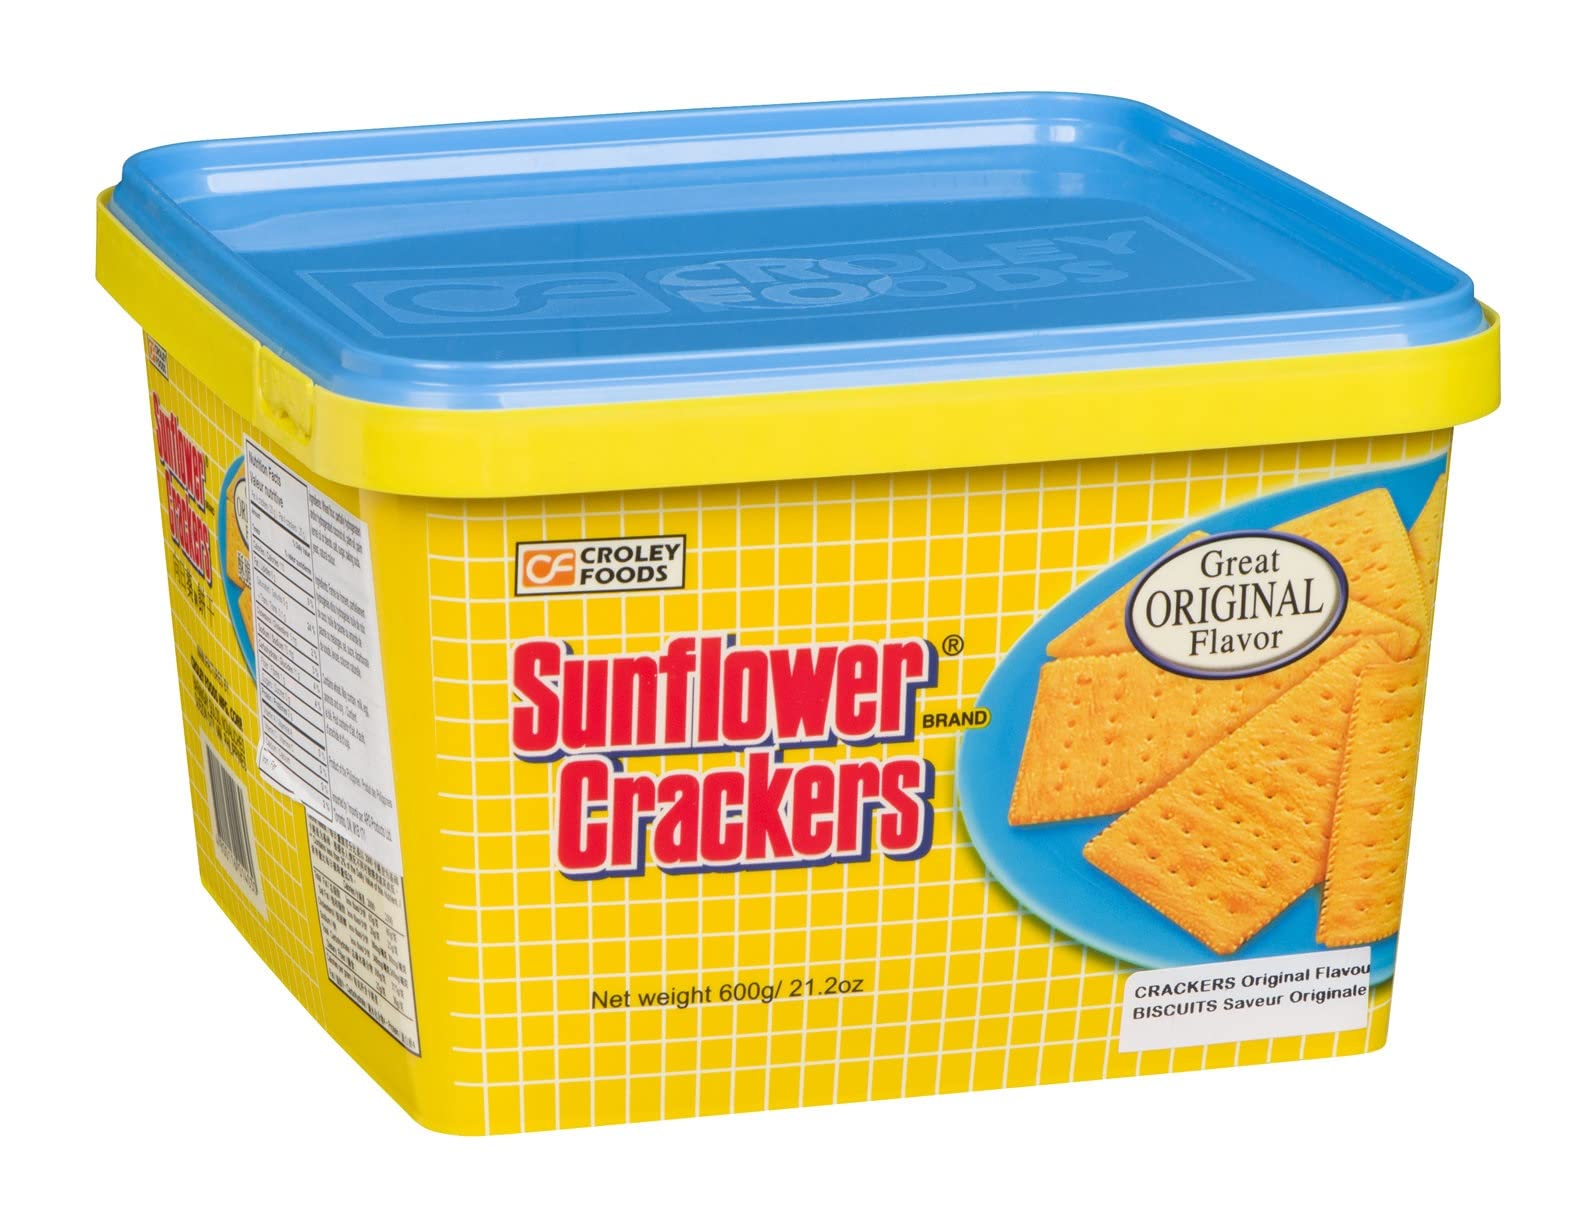 Croley Foods Sunflower Crackers Original Flavor Cream Sandwhich 23oz